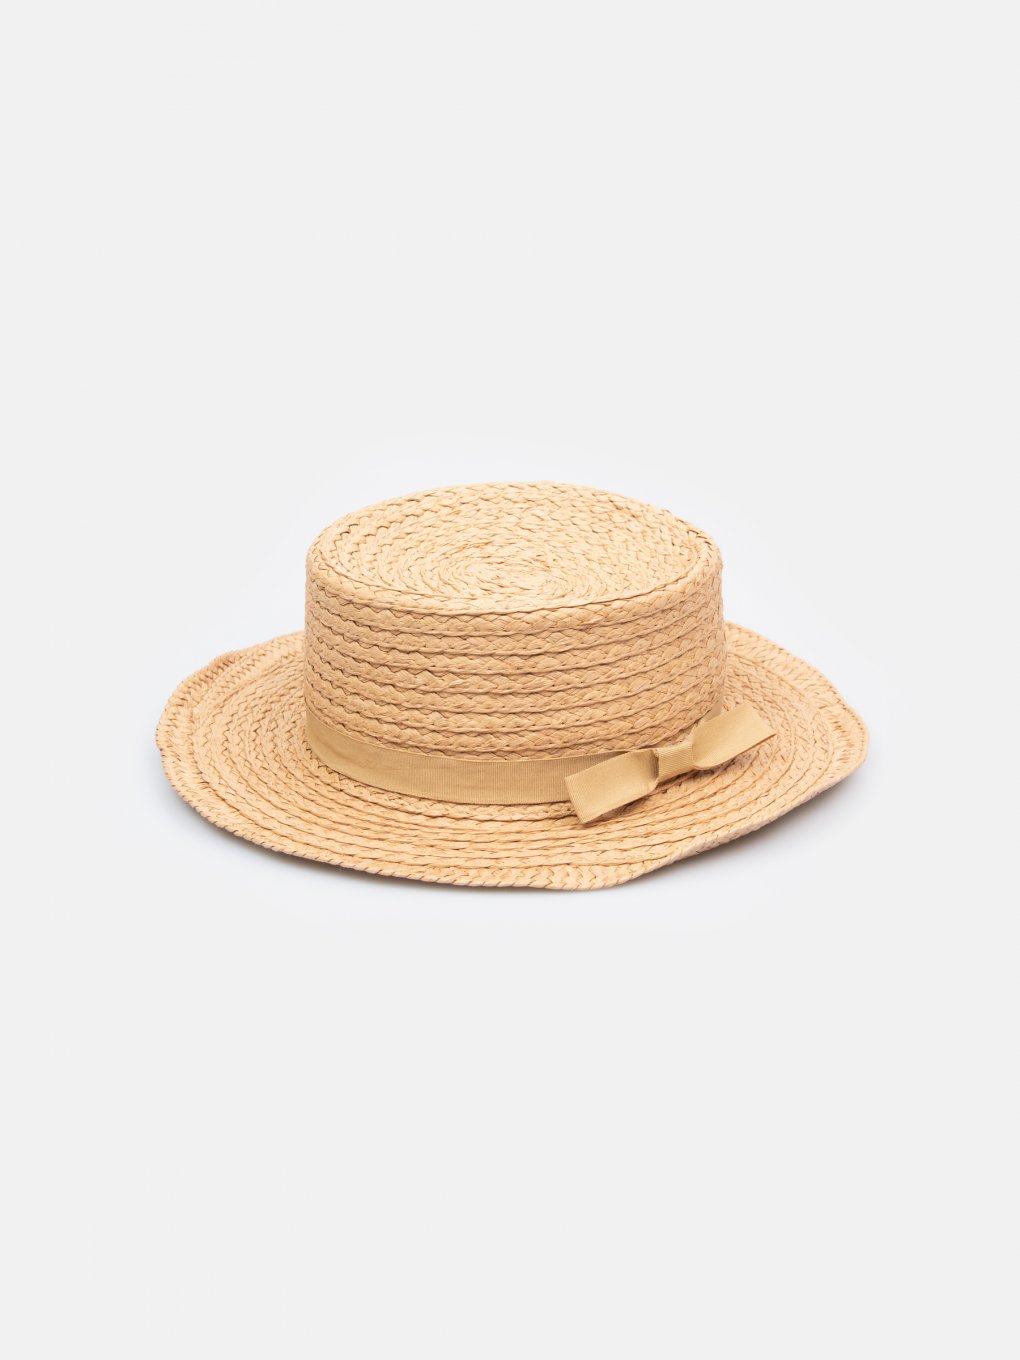 Dámsky slamený klobúk boater s mašlou